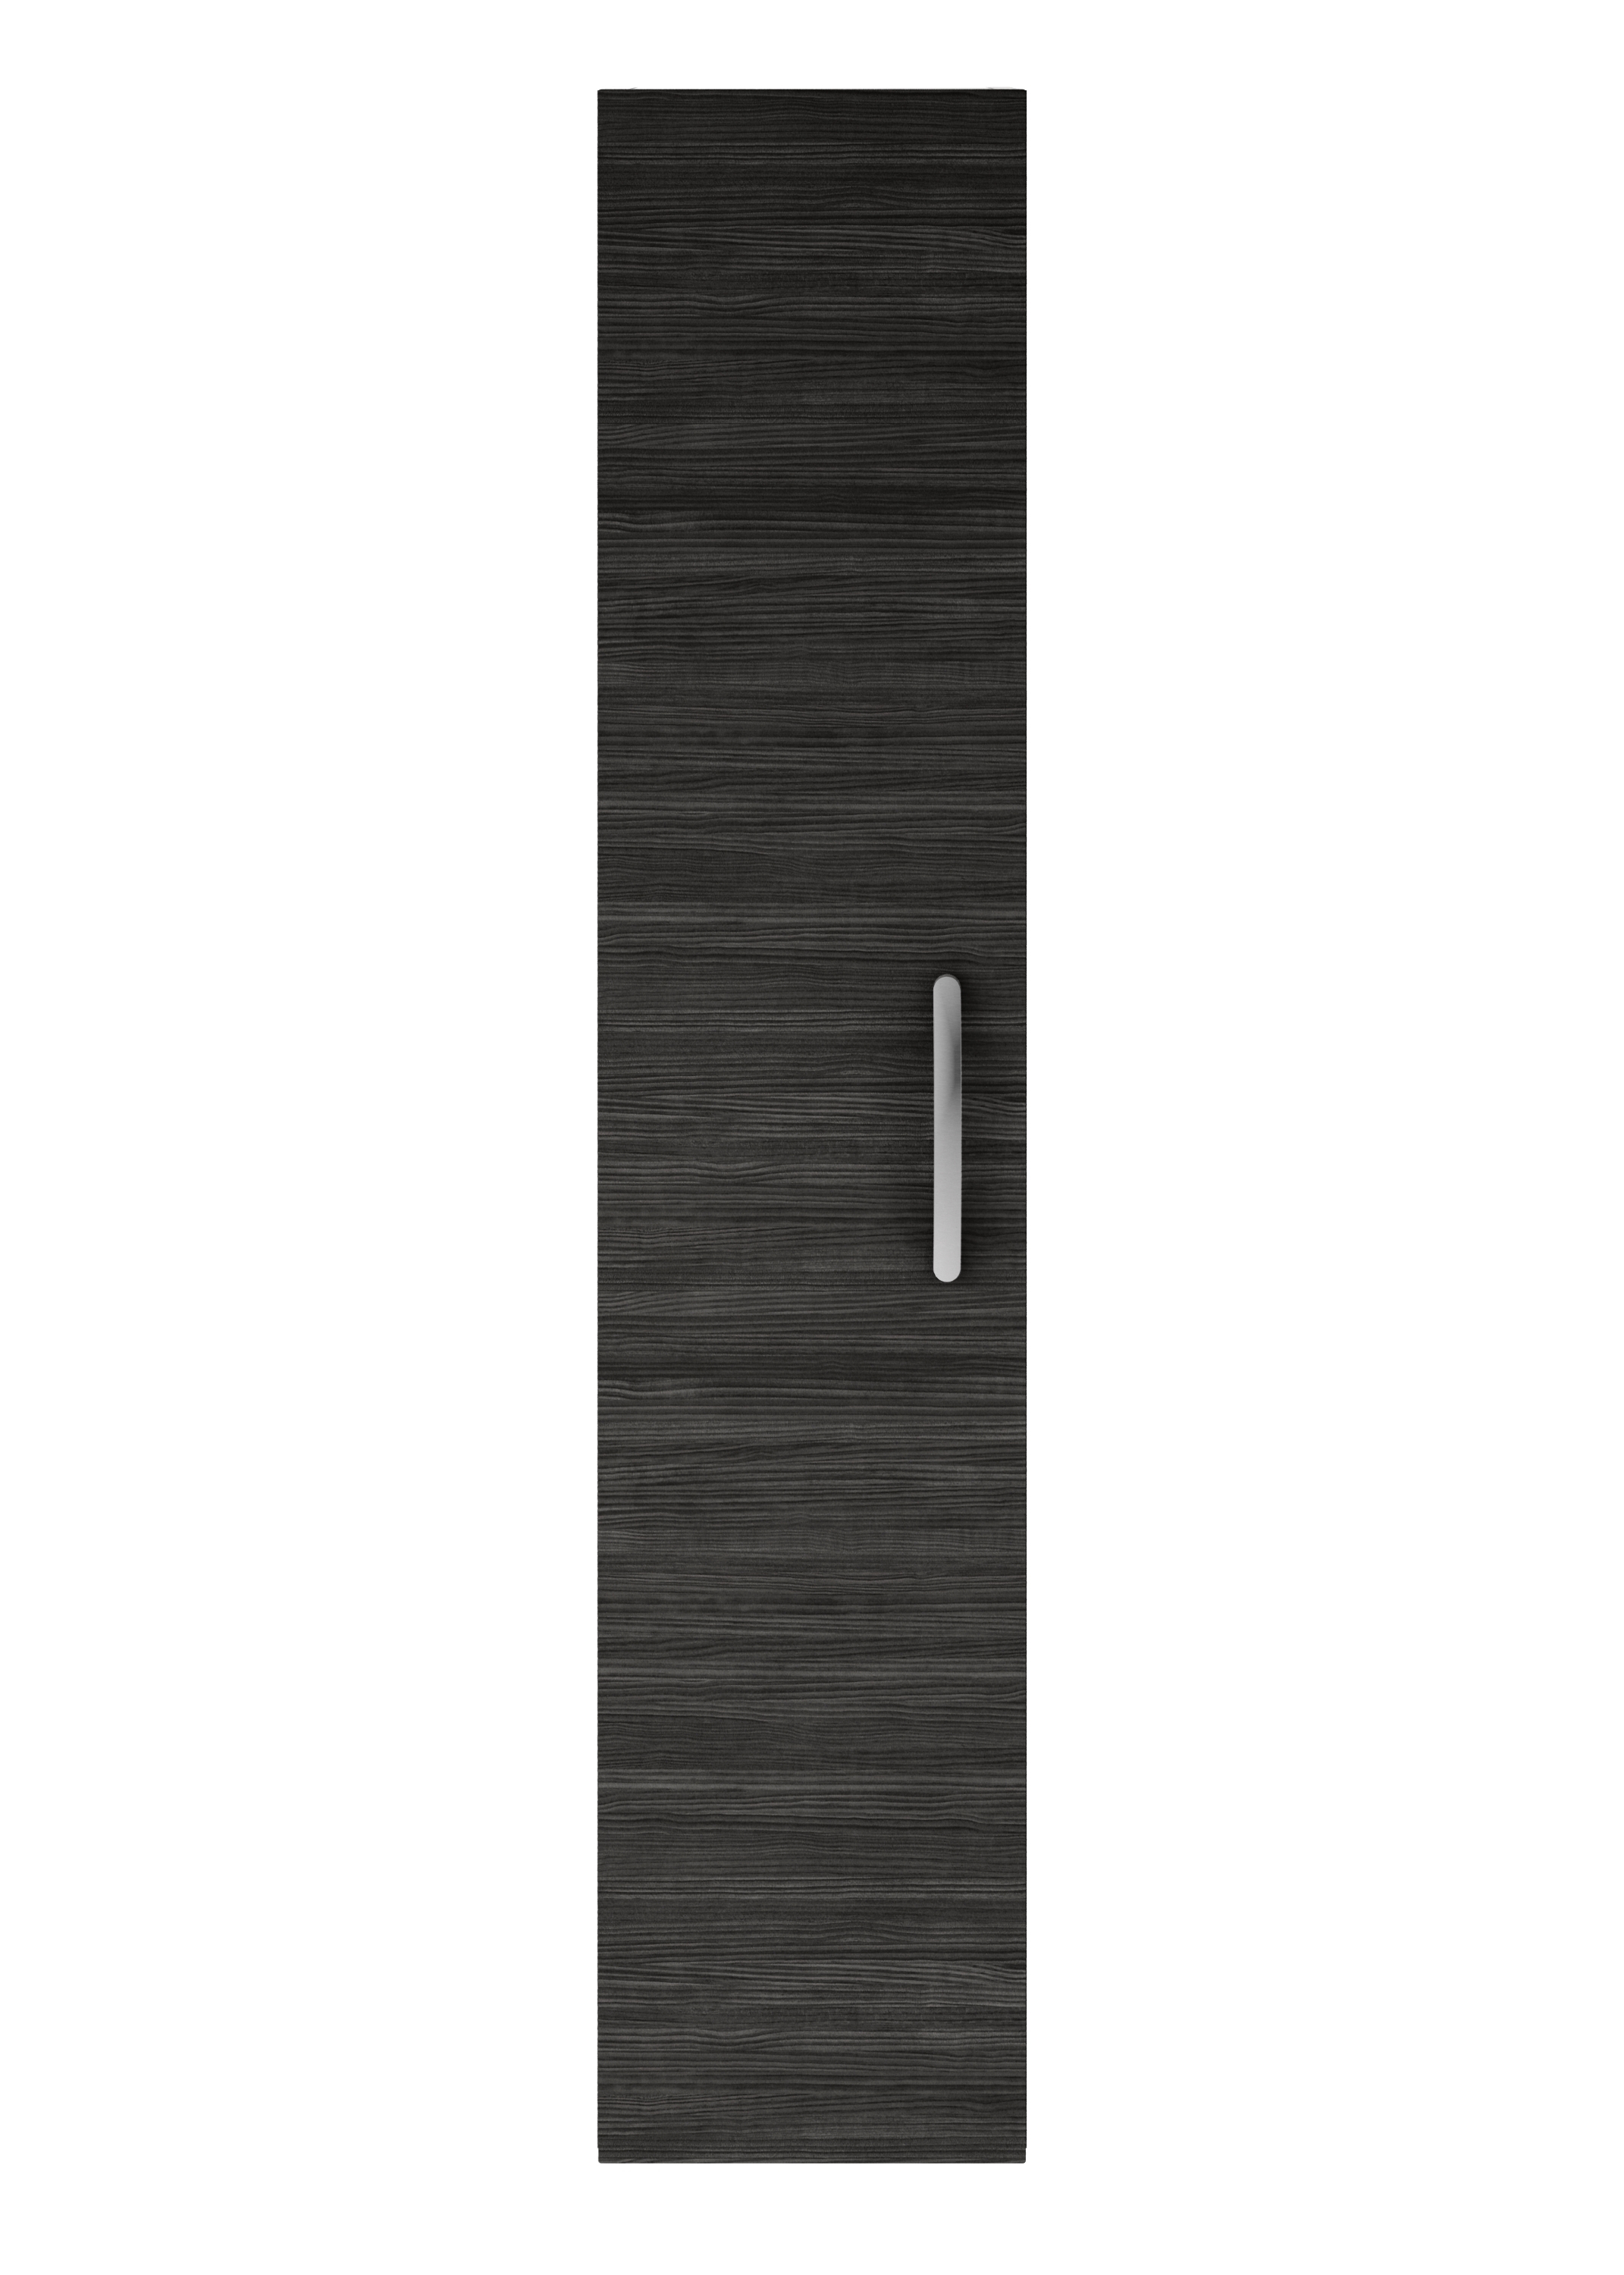 Nuie Athena Hacienda Black Contemporary 300mm Tall Unit (1 Door) - MOD661 